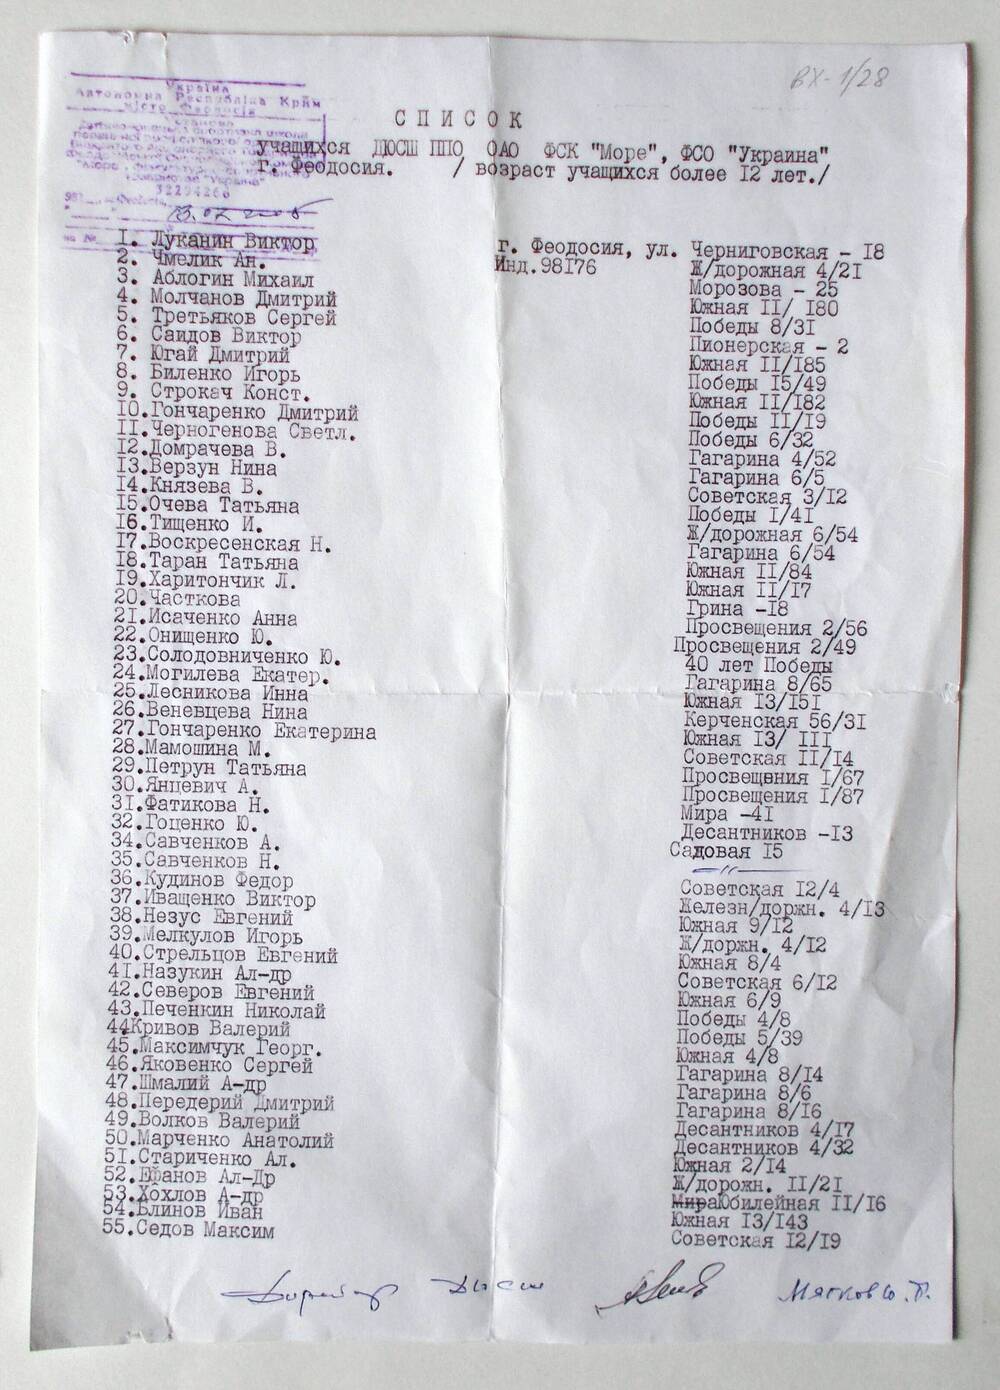 Список учащихся ДЮСШ ППО ОАО ФСК «Море», ФСО «Украина». 2005 г.